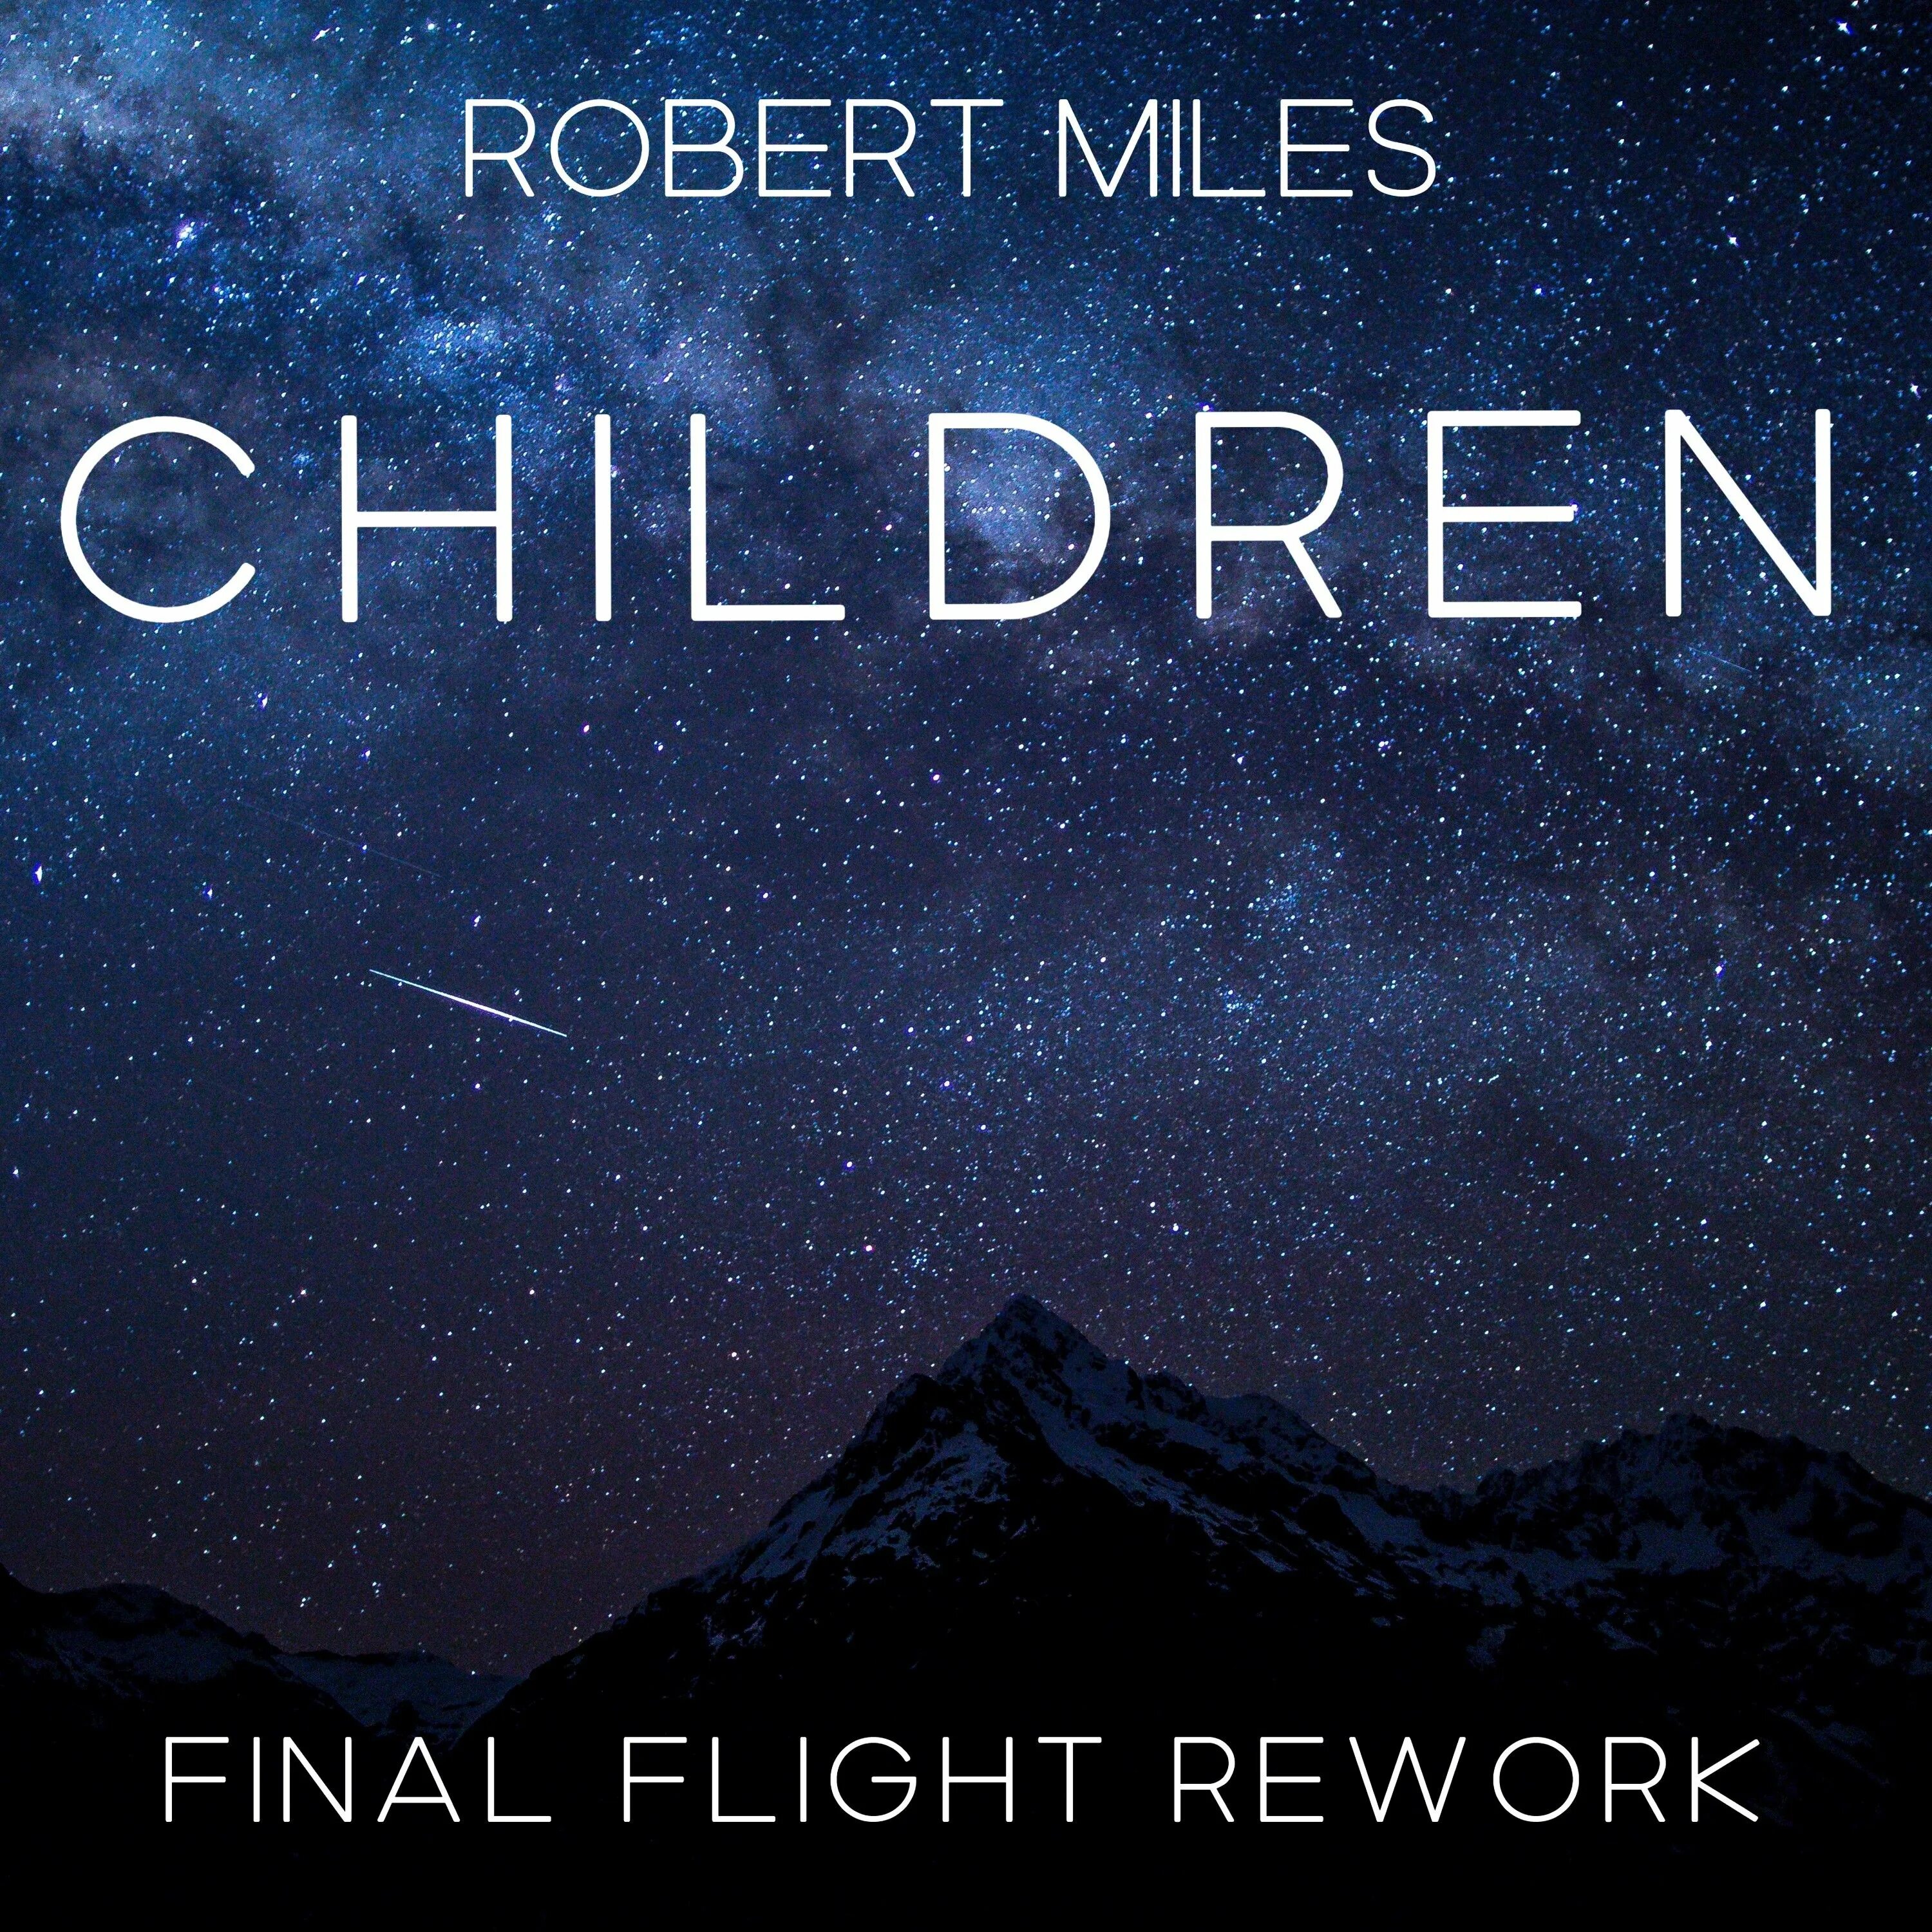 Robert Miles. Robert Miles children. Robert Miles children обложка. Robert miles dreaming